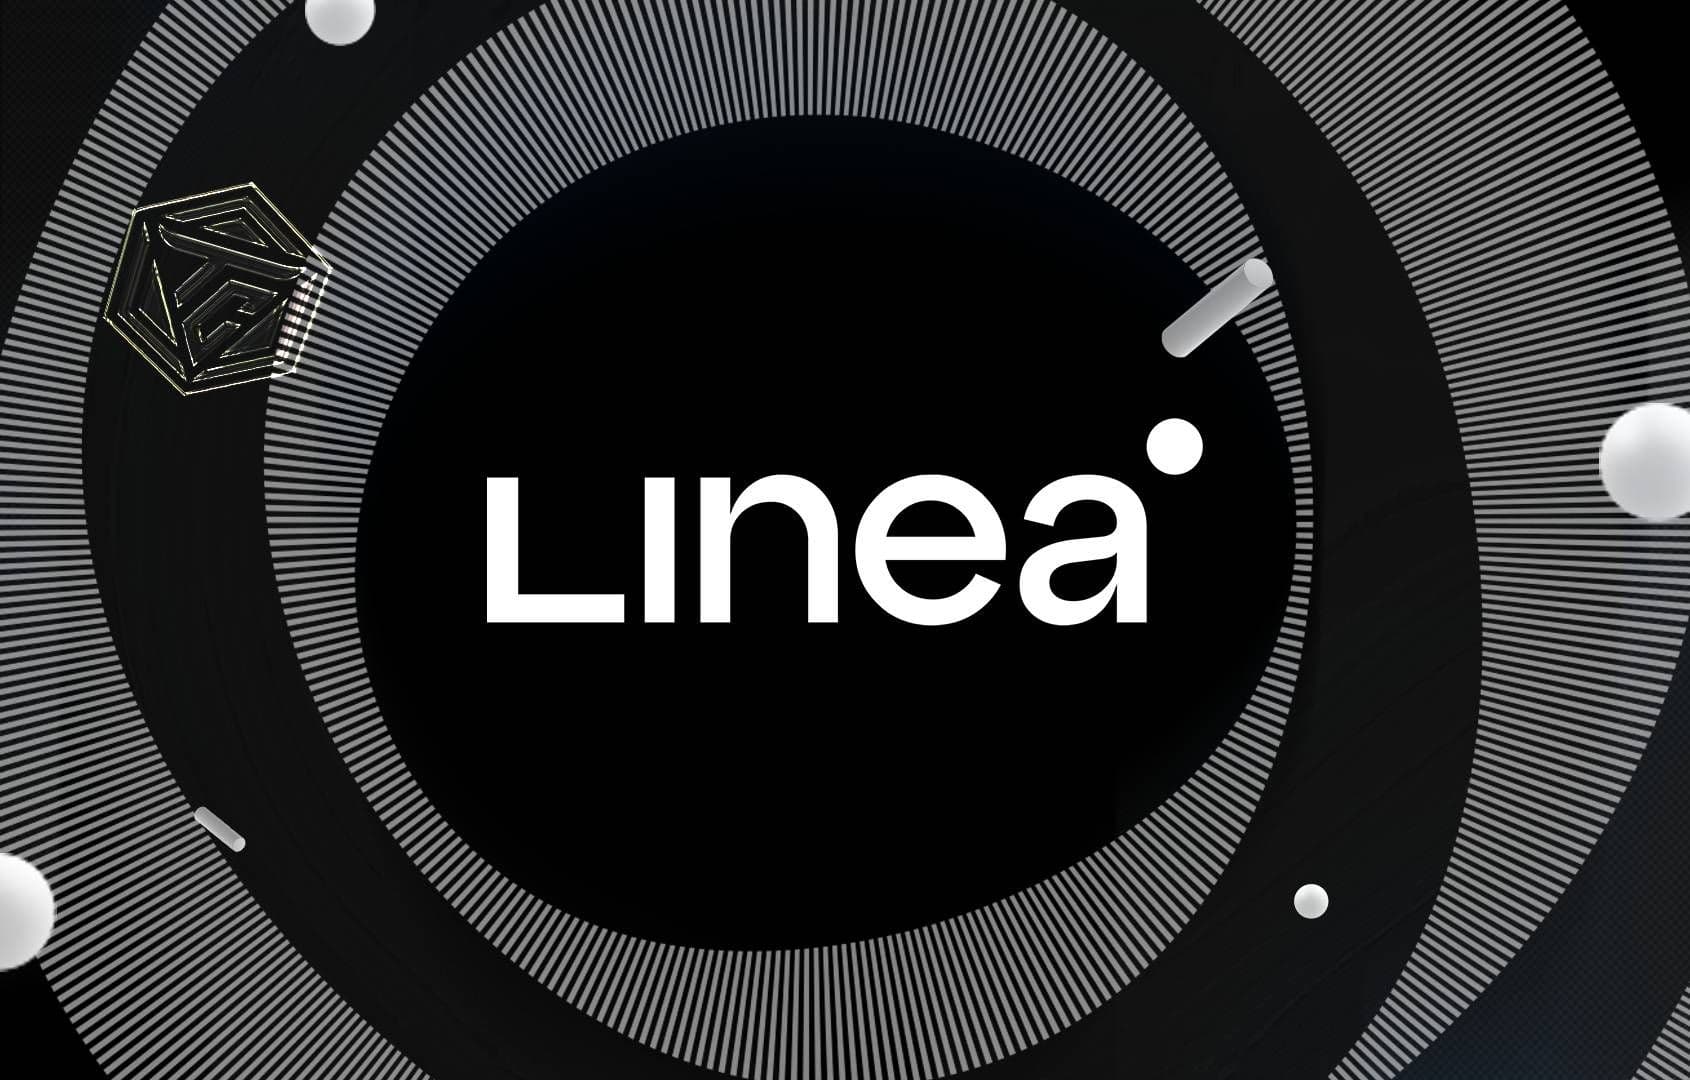 Linea là gì? Layer 2 nhà ConsenSys được phát triển trên Ethereum